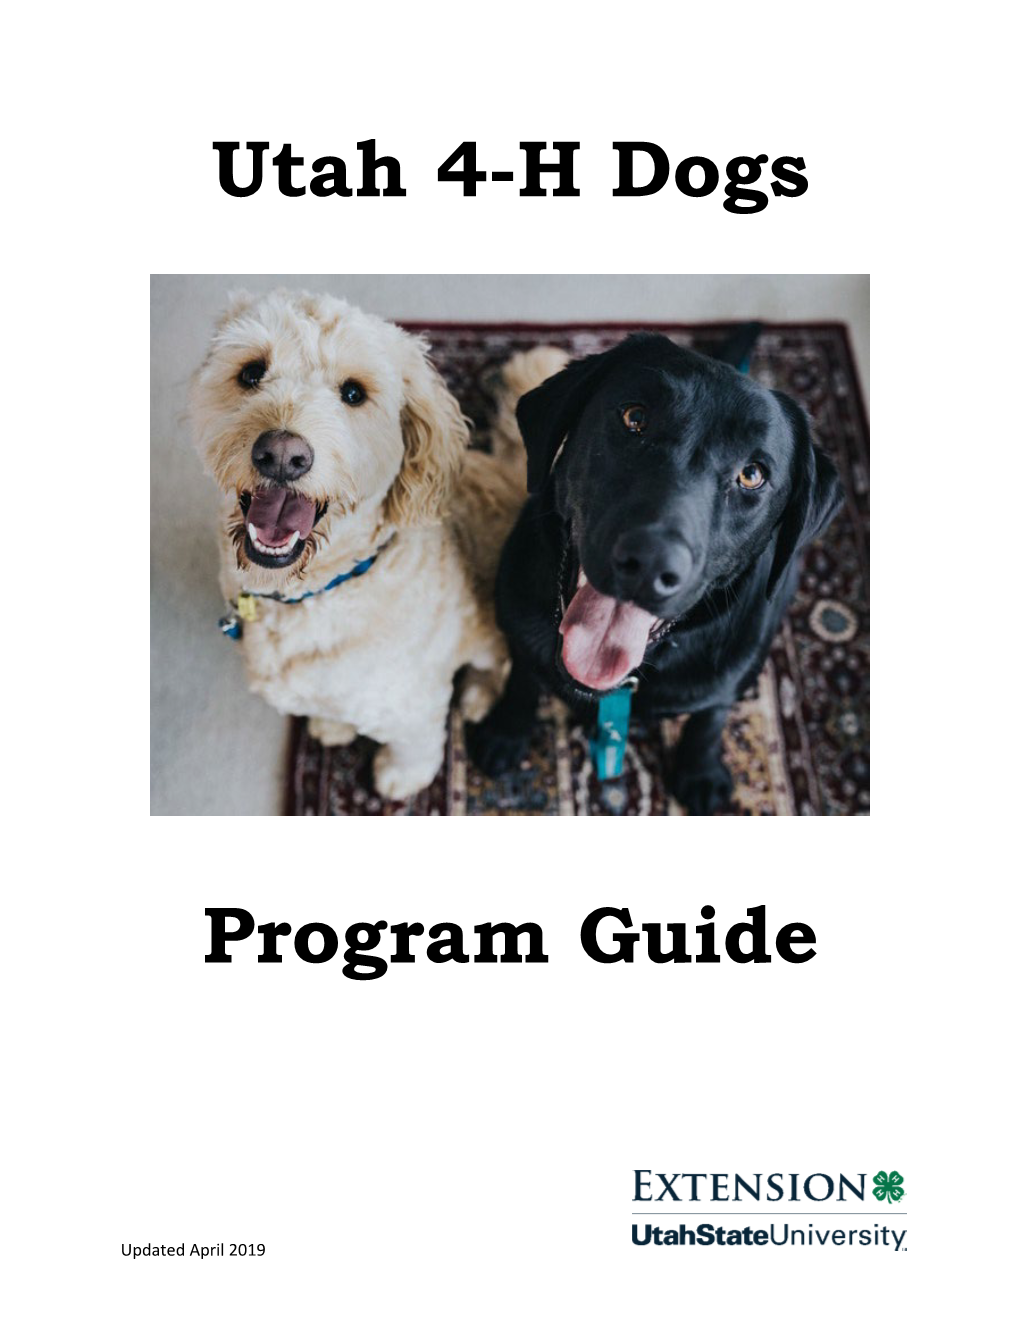 Utah 4-H Dogs Program Guide